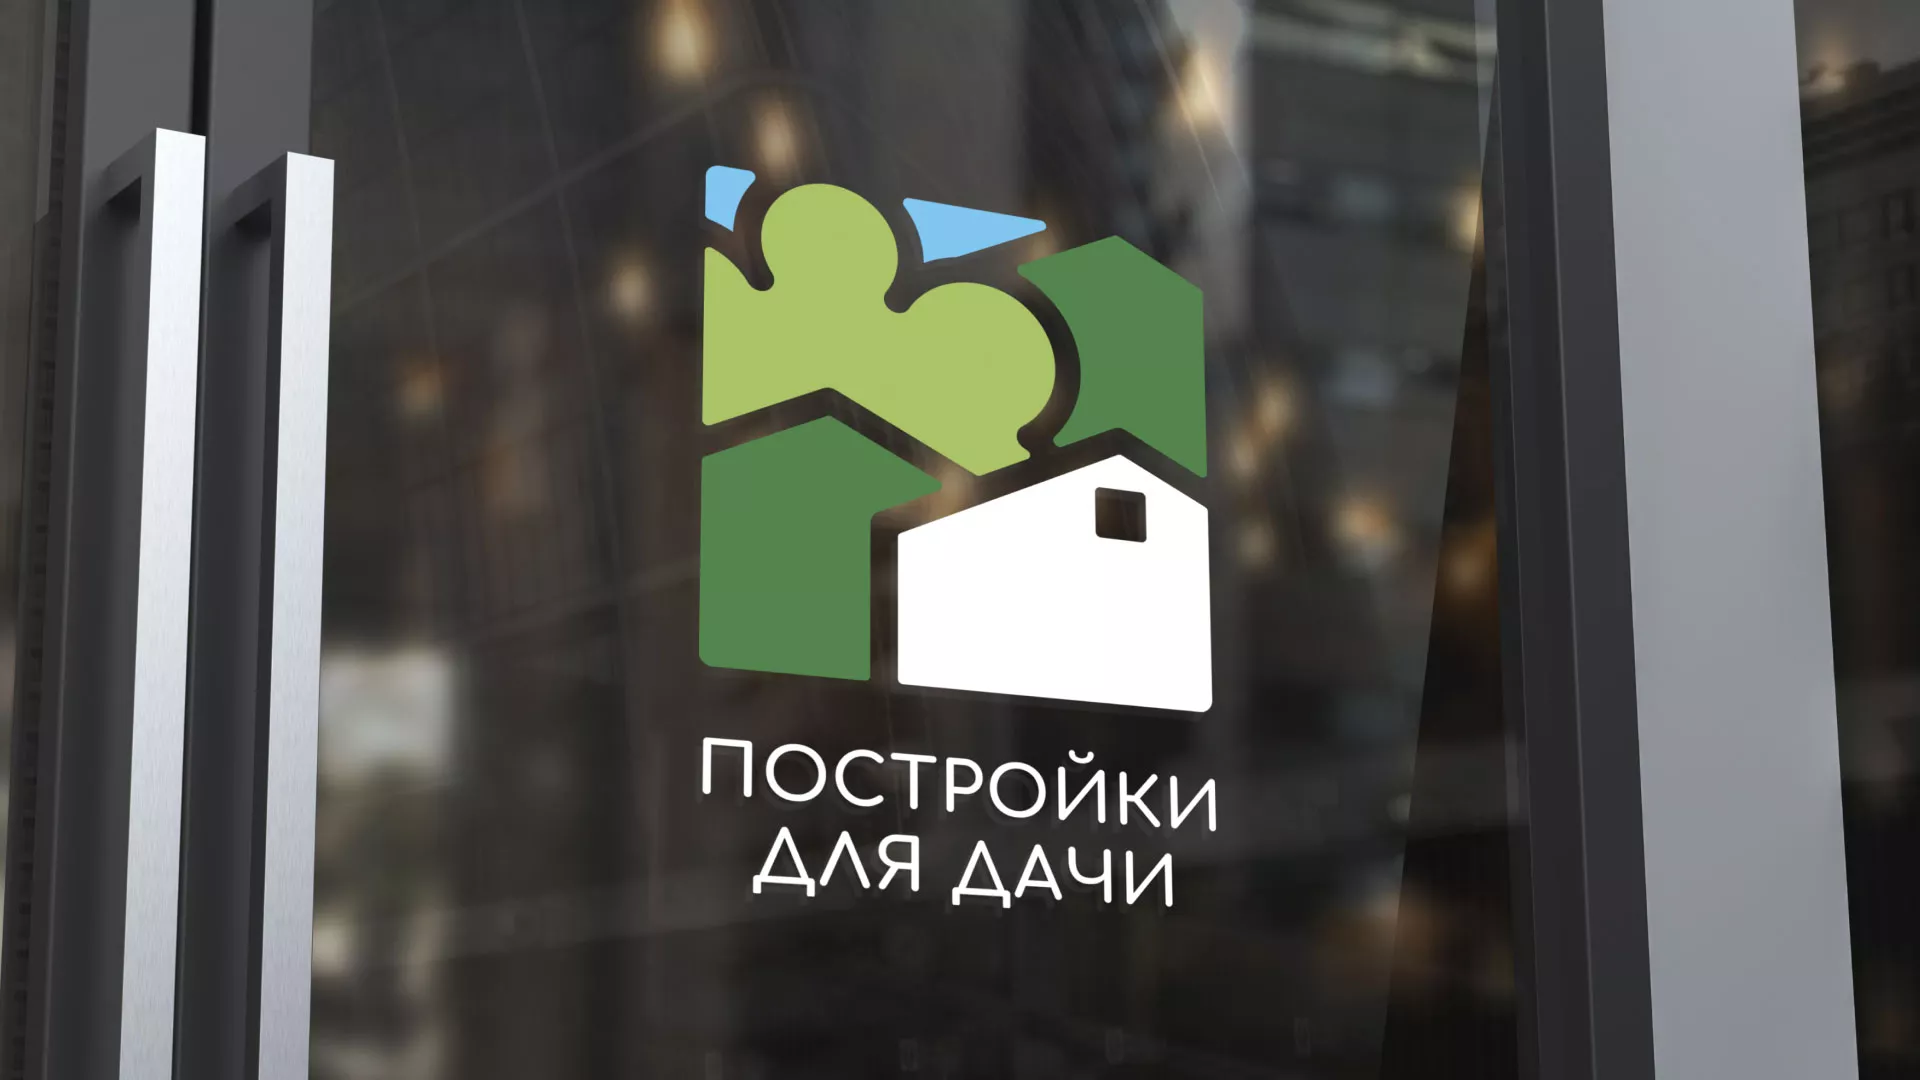 Разработка логотипа в Чаплыгине для компании «Постройки для дачи»